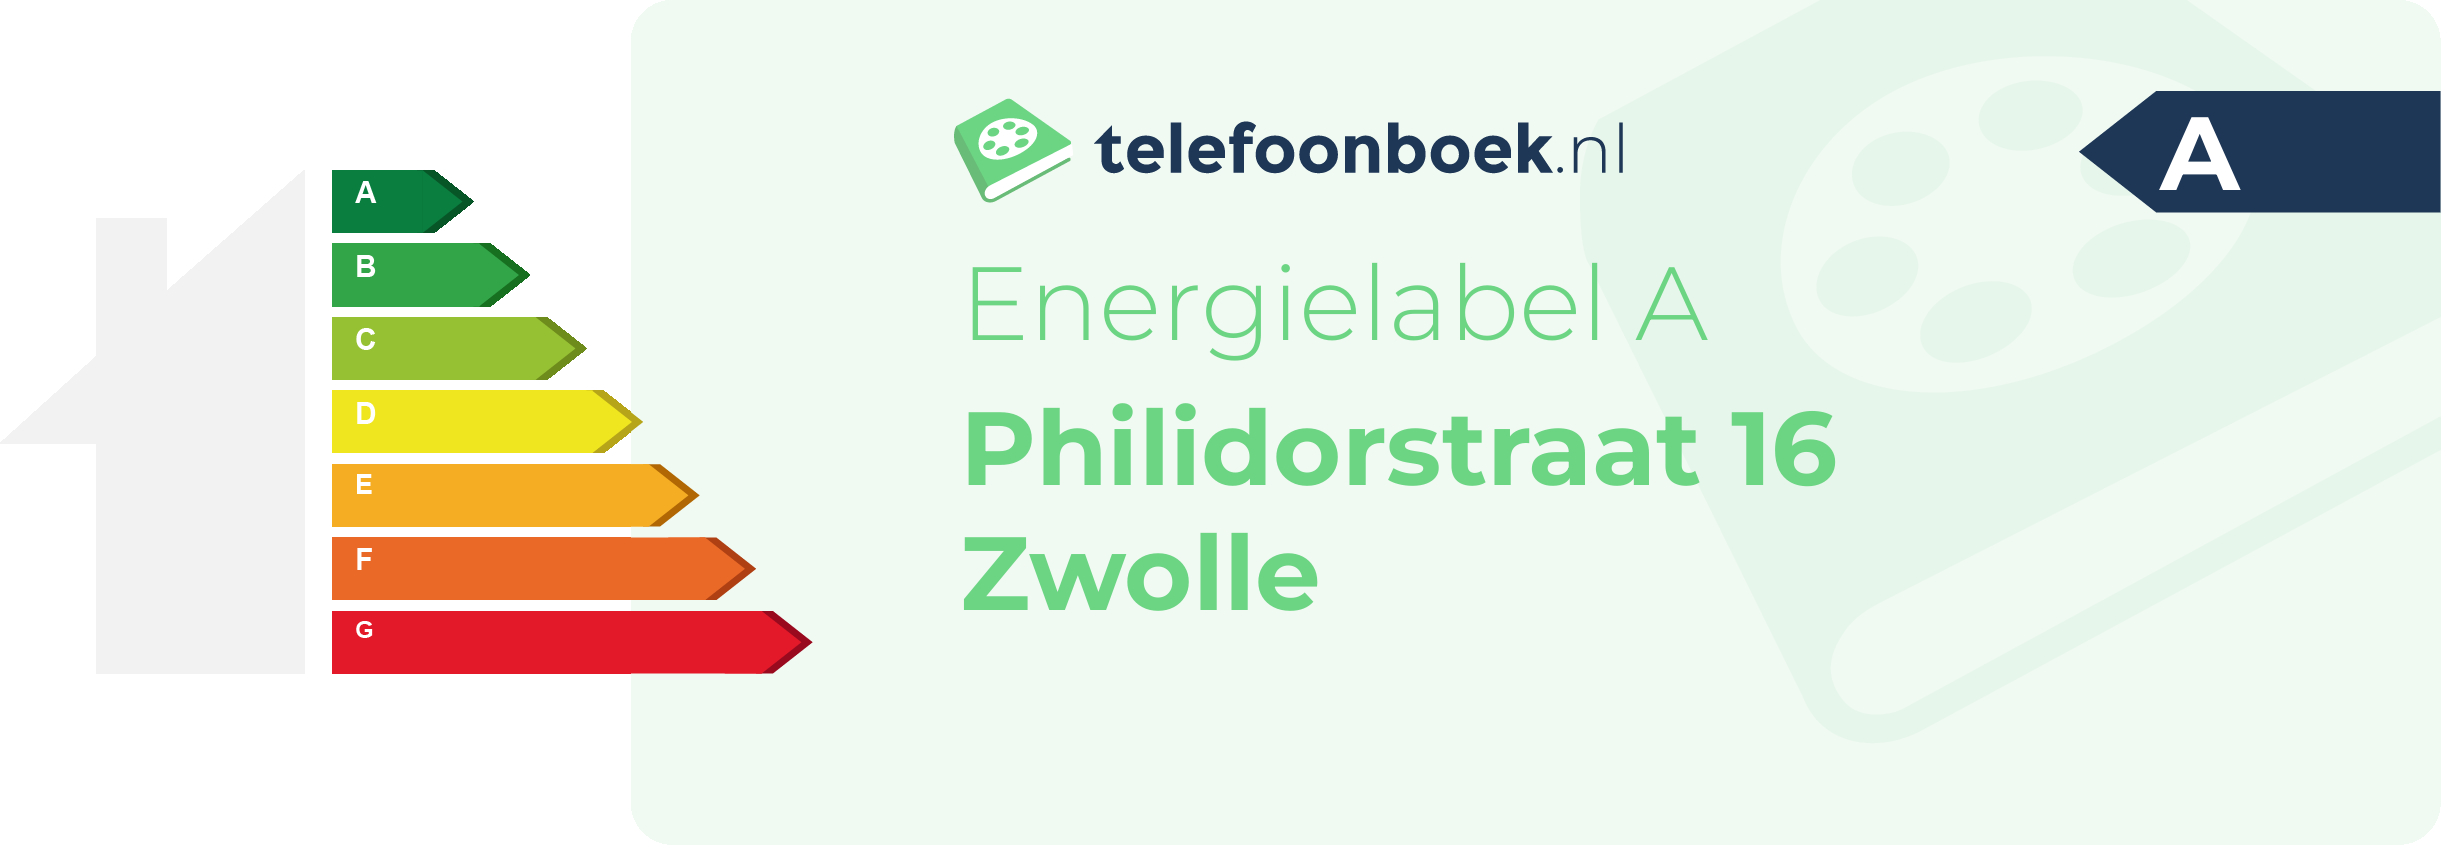 Energielabel Philidorstraat 16 Zwolle